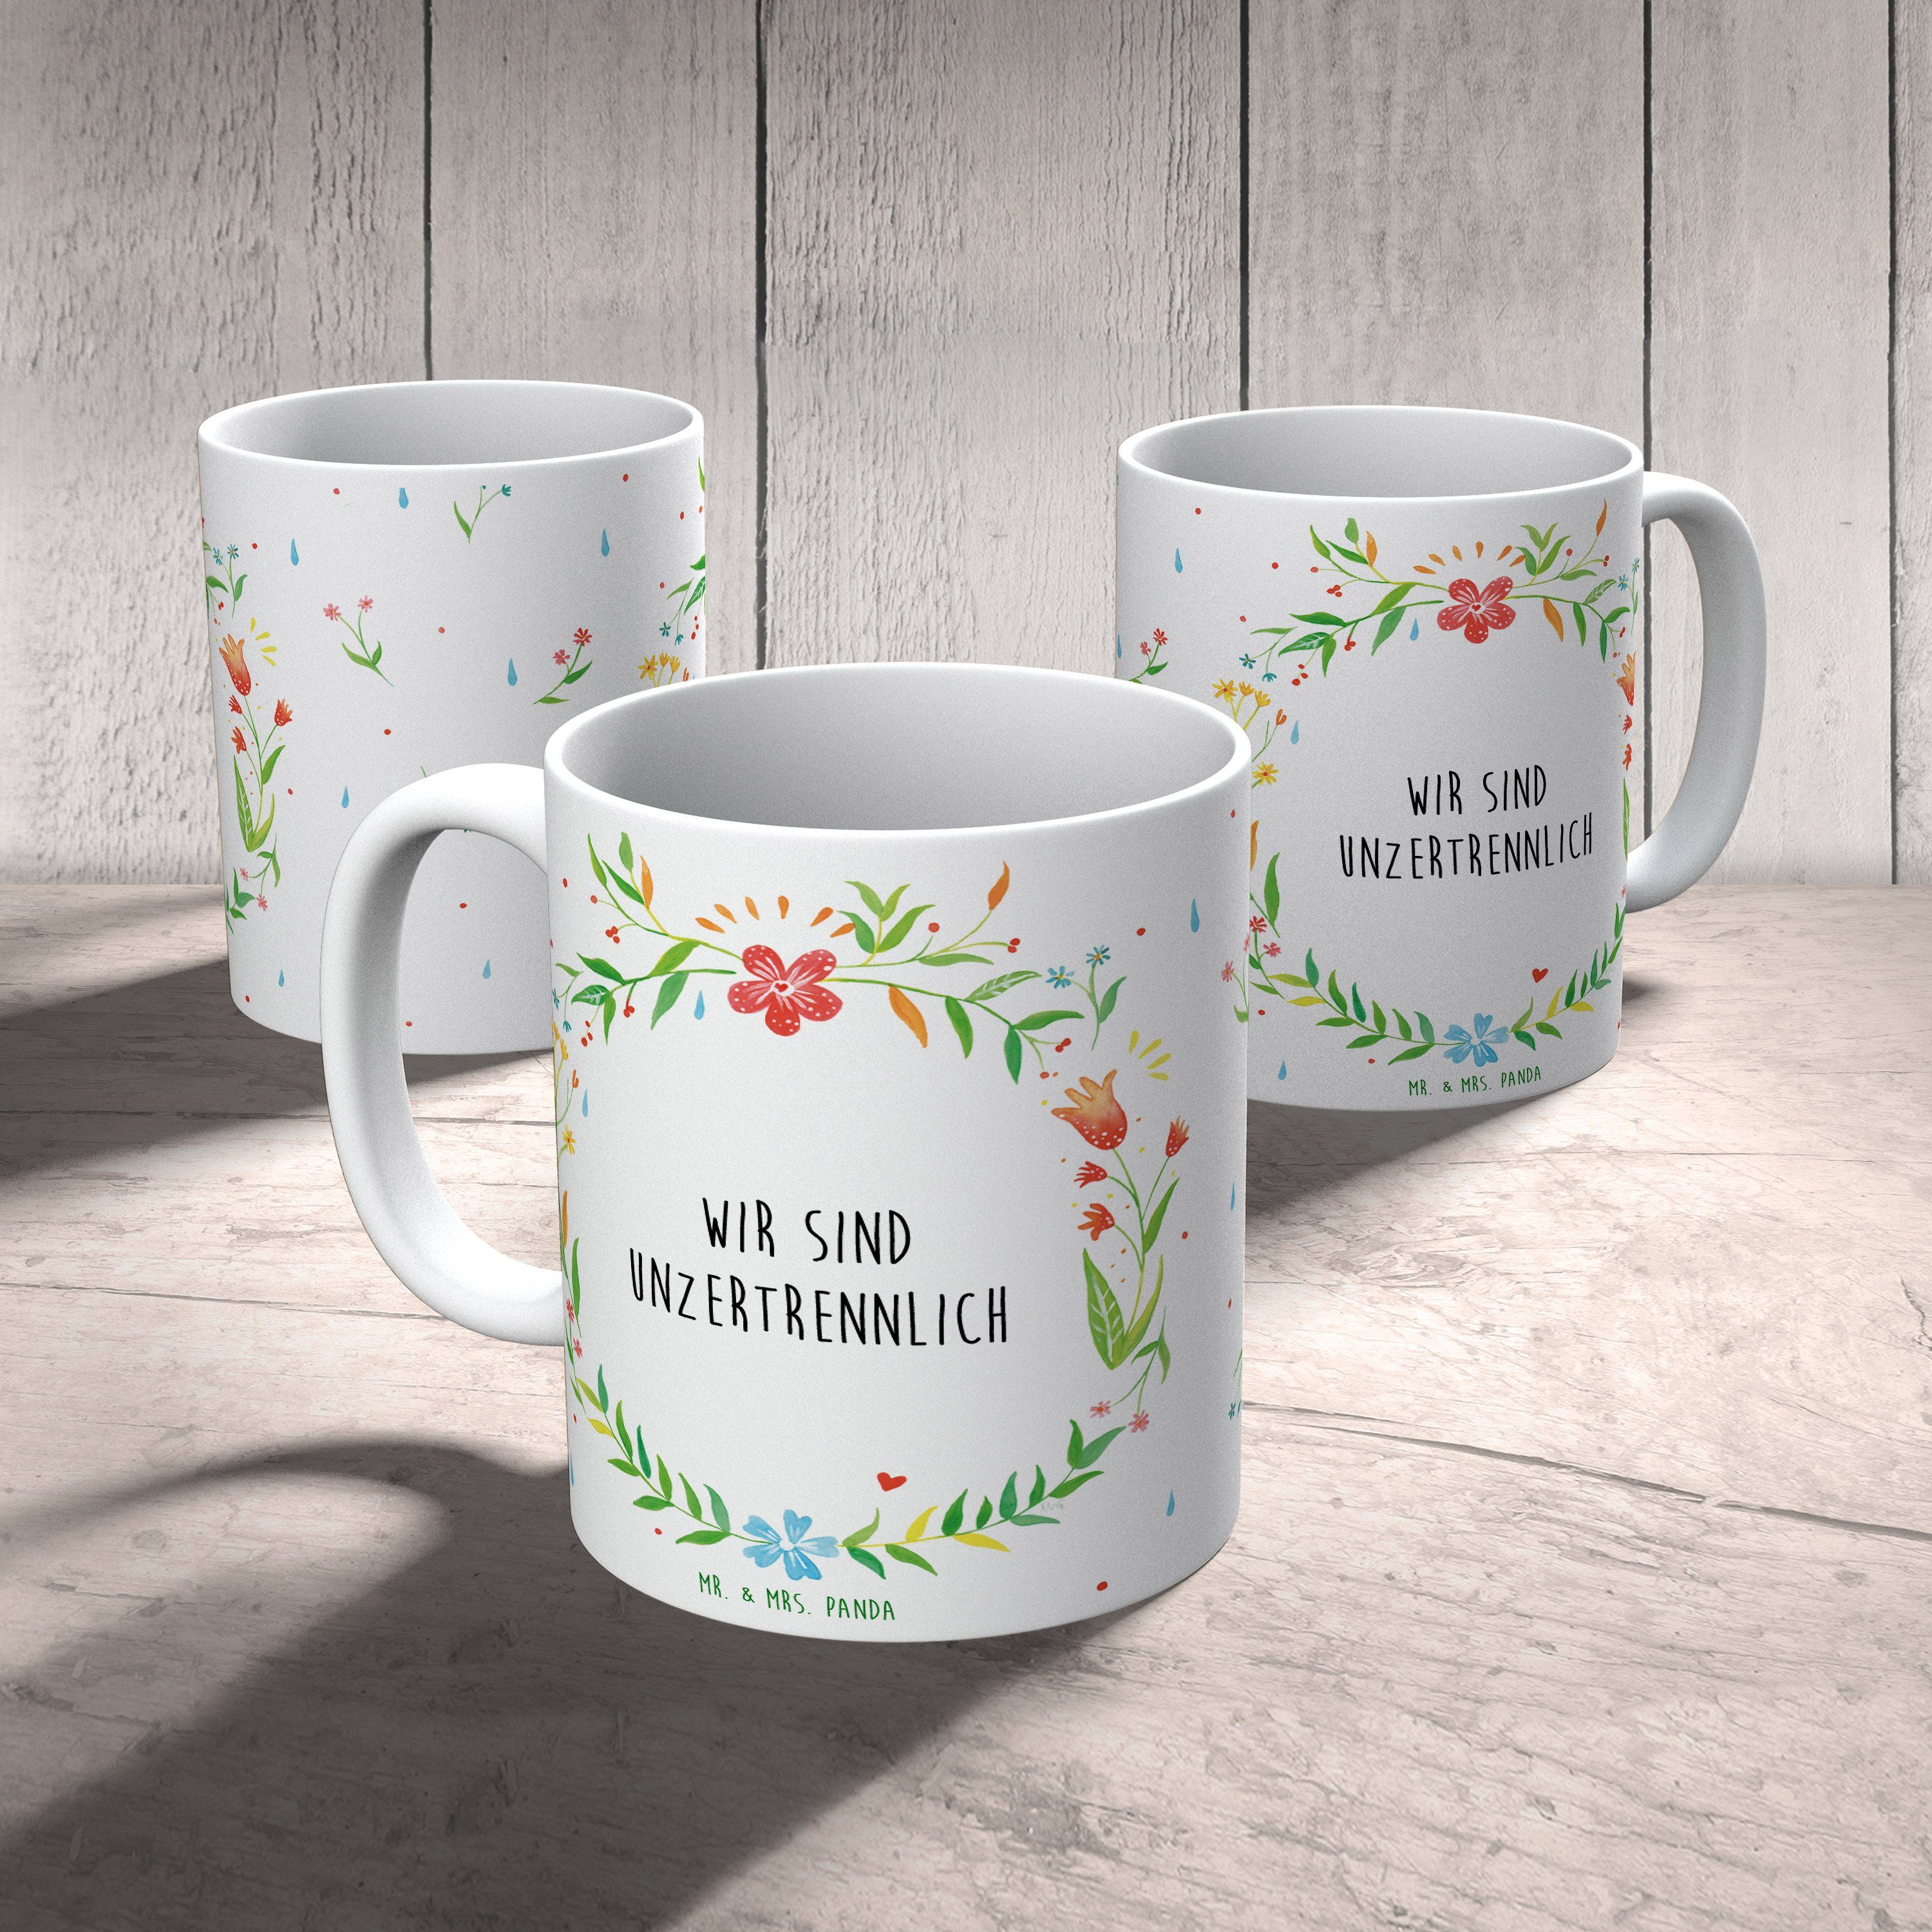 Mr. & Mrs. Panda Tasse - Wir T, Becher, unzertrennlich Geschenk, Keramik sind Tasse Teetasse, Motive